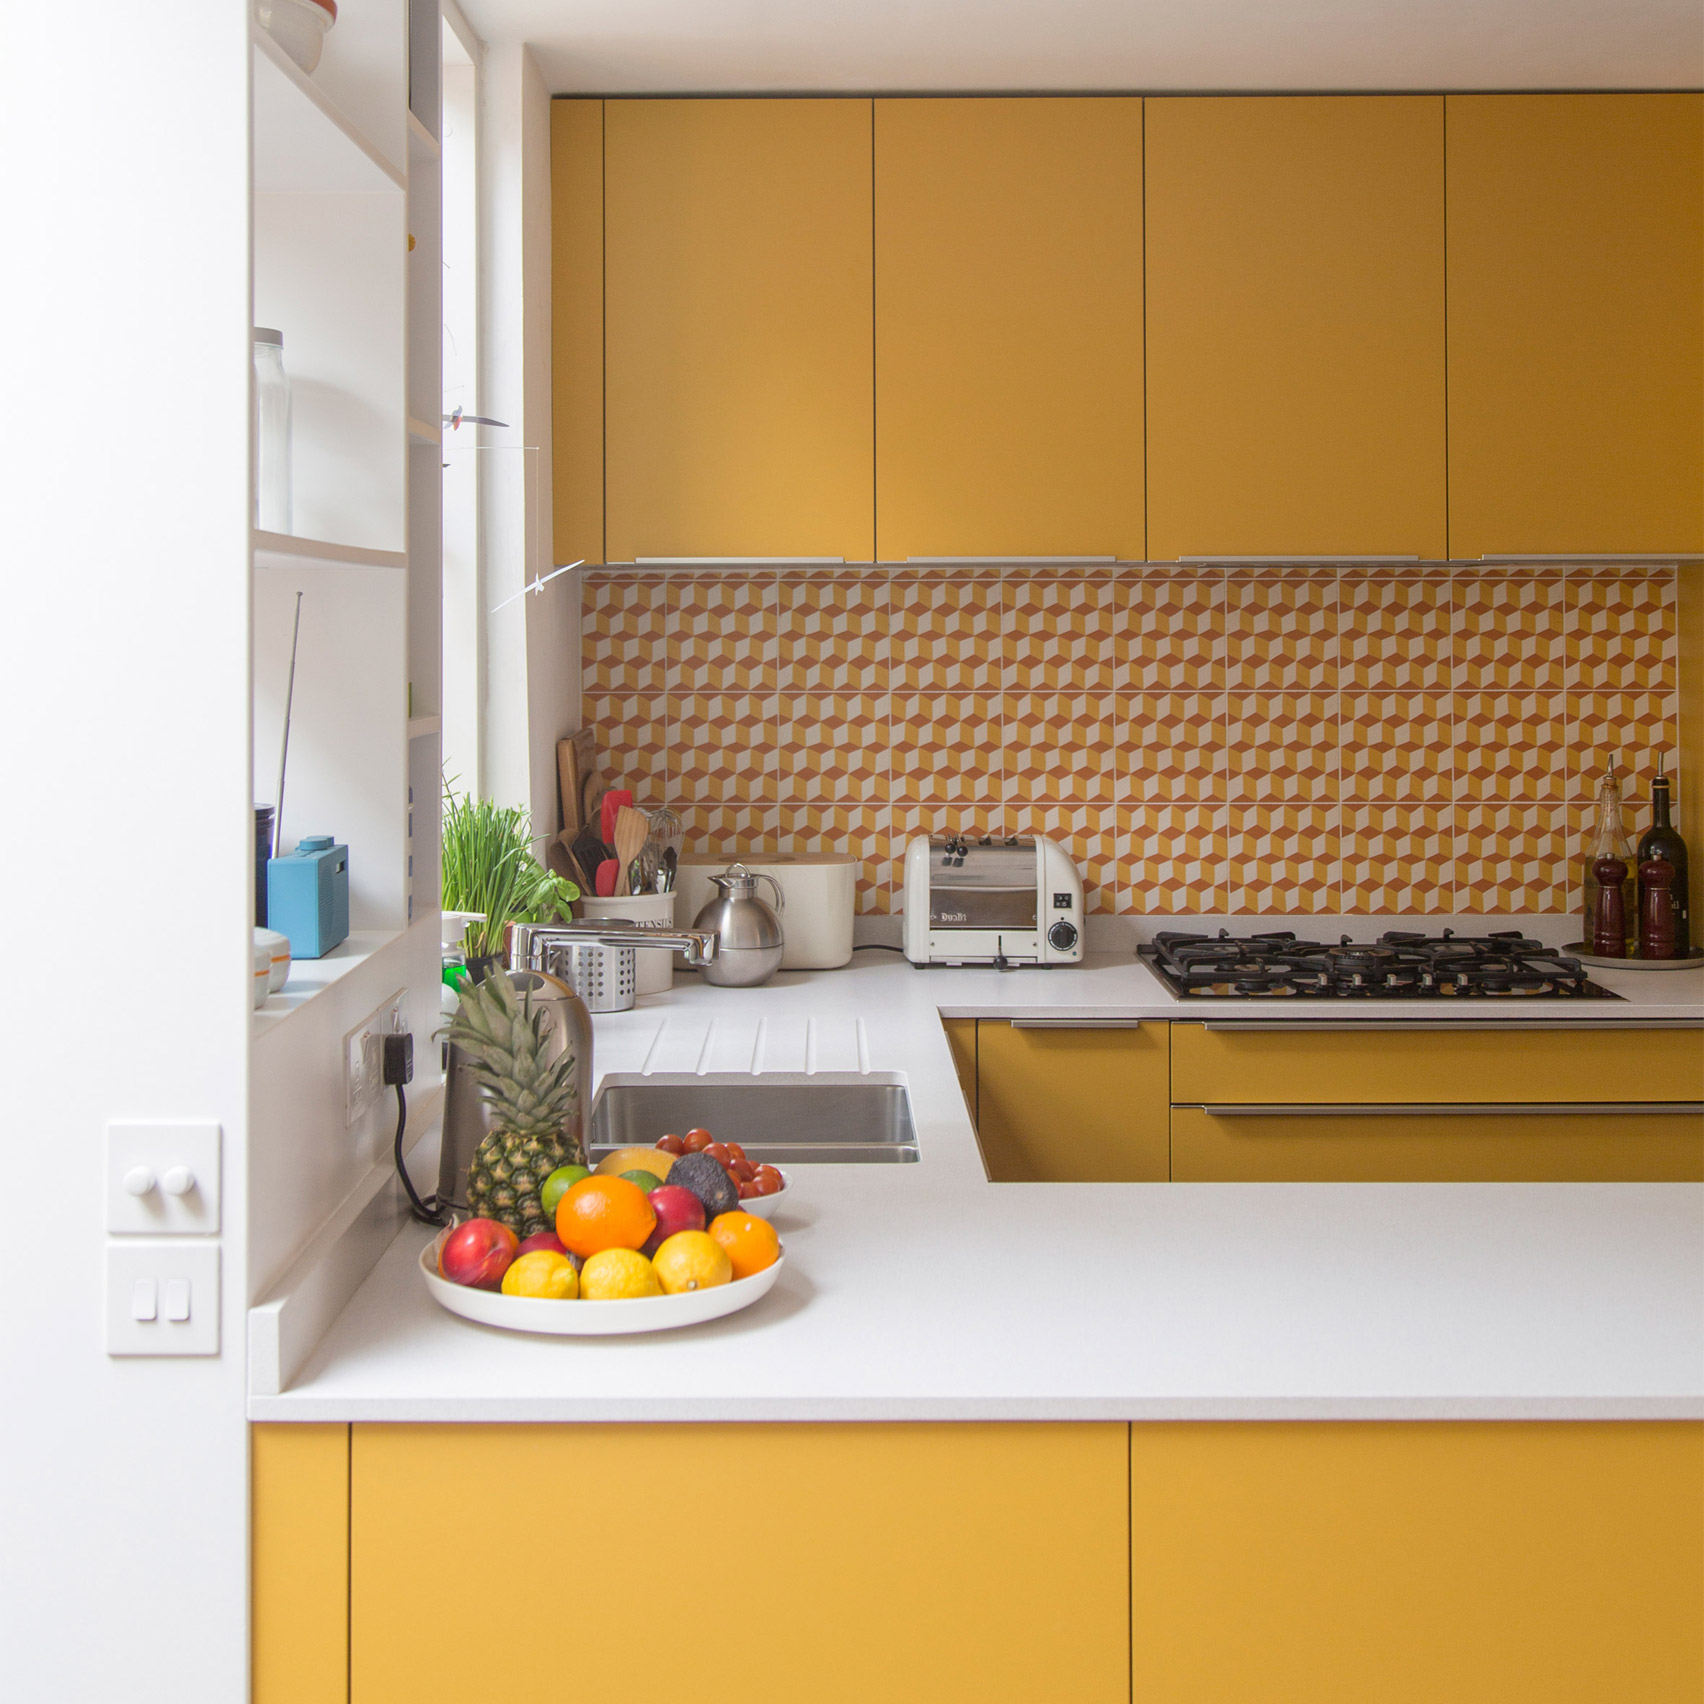 Phòng bếp của ngôi nhà được xây dựng vào những năm 60 của thế kỷ XX tại London, Anh. Những chiếc tủ được sơn màu vàng mù tạt mang đến sự trẻ trung, năng động, rực sáng cả một căn bếp nhỏ. 